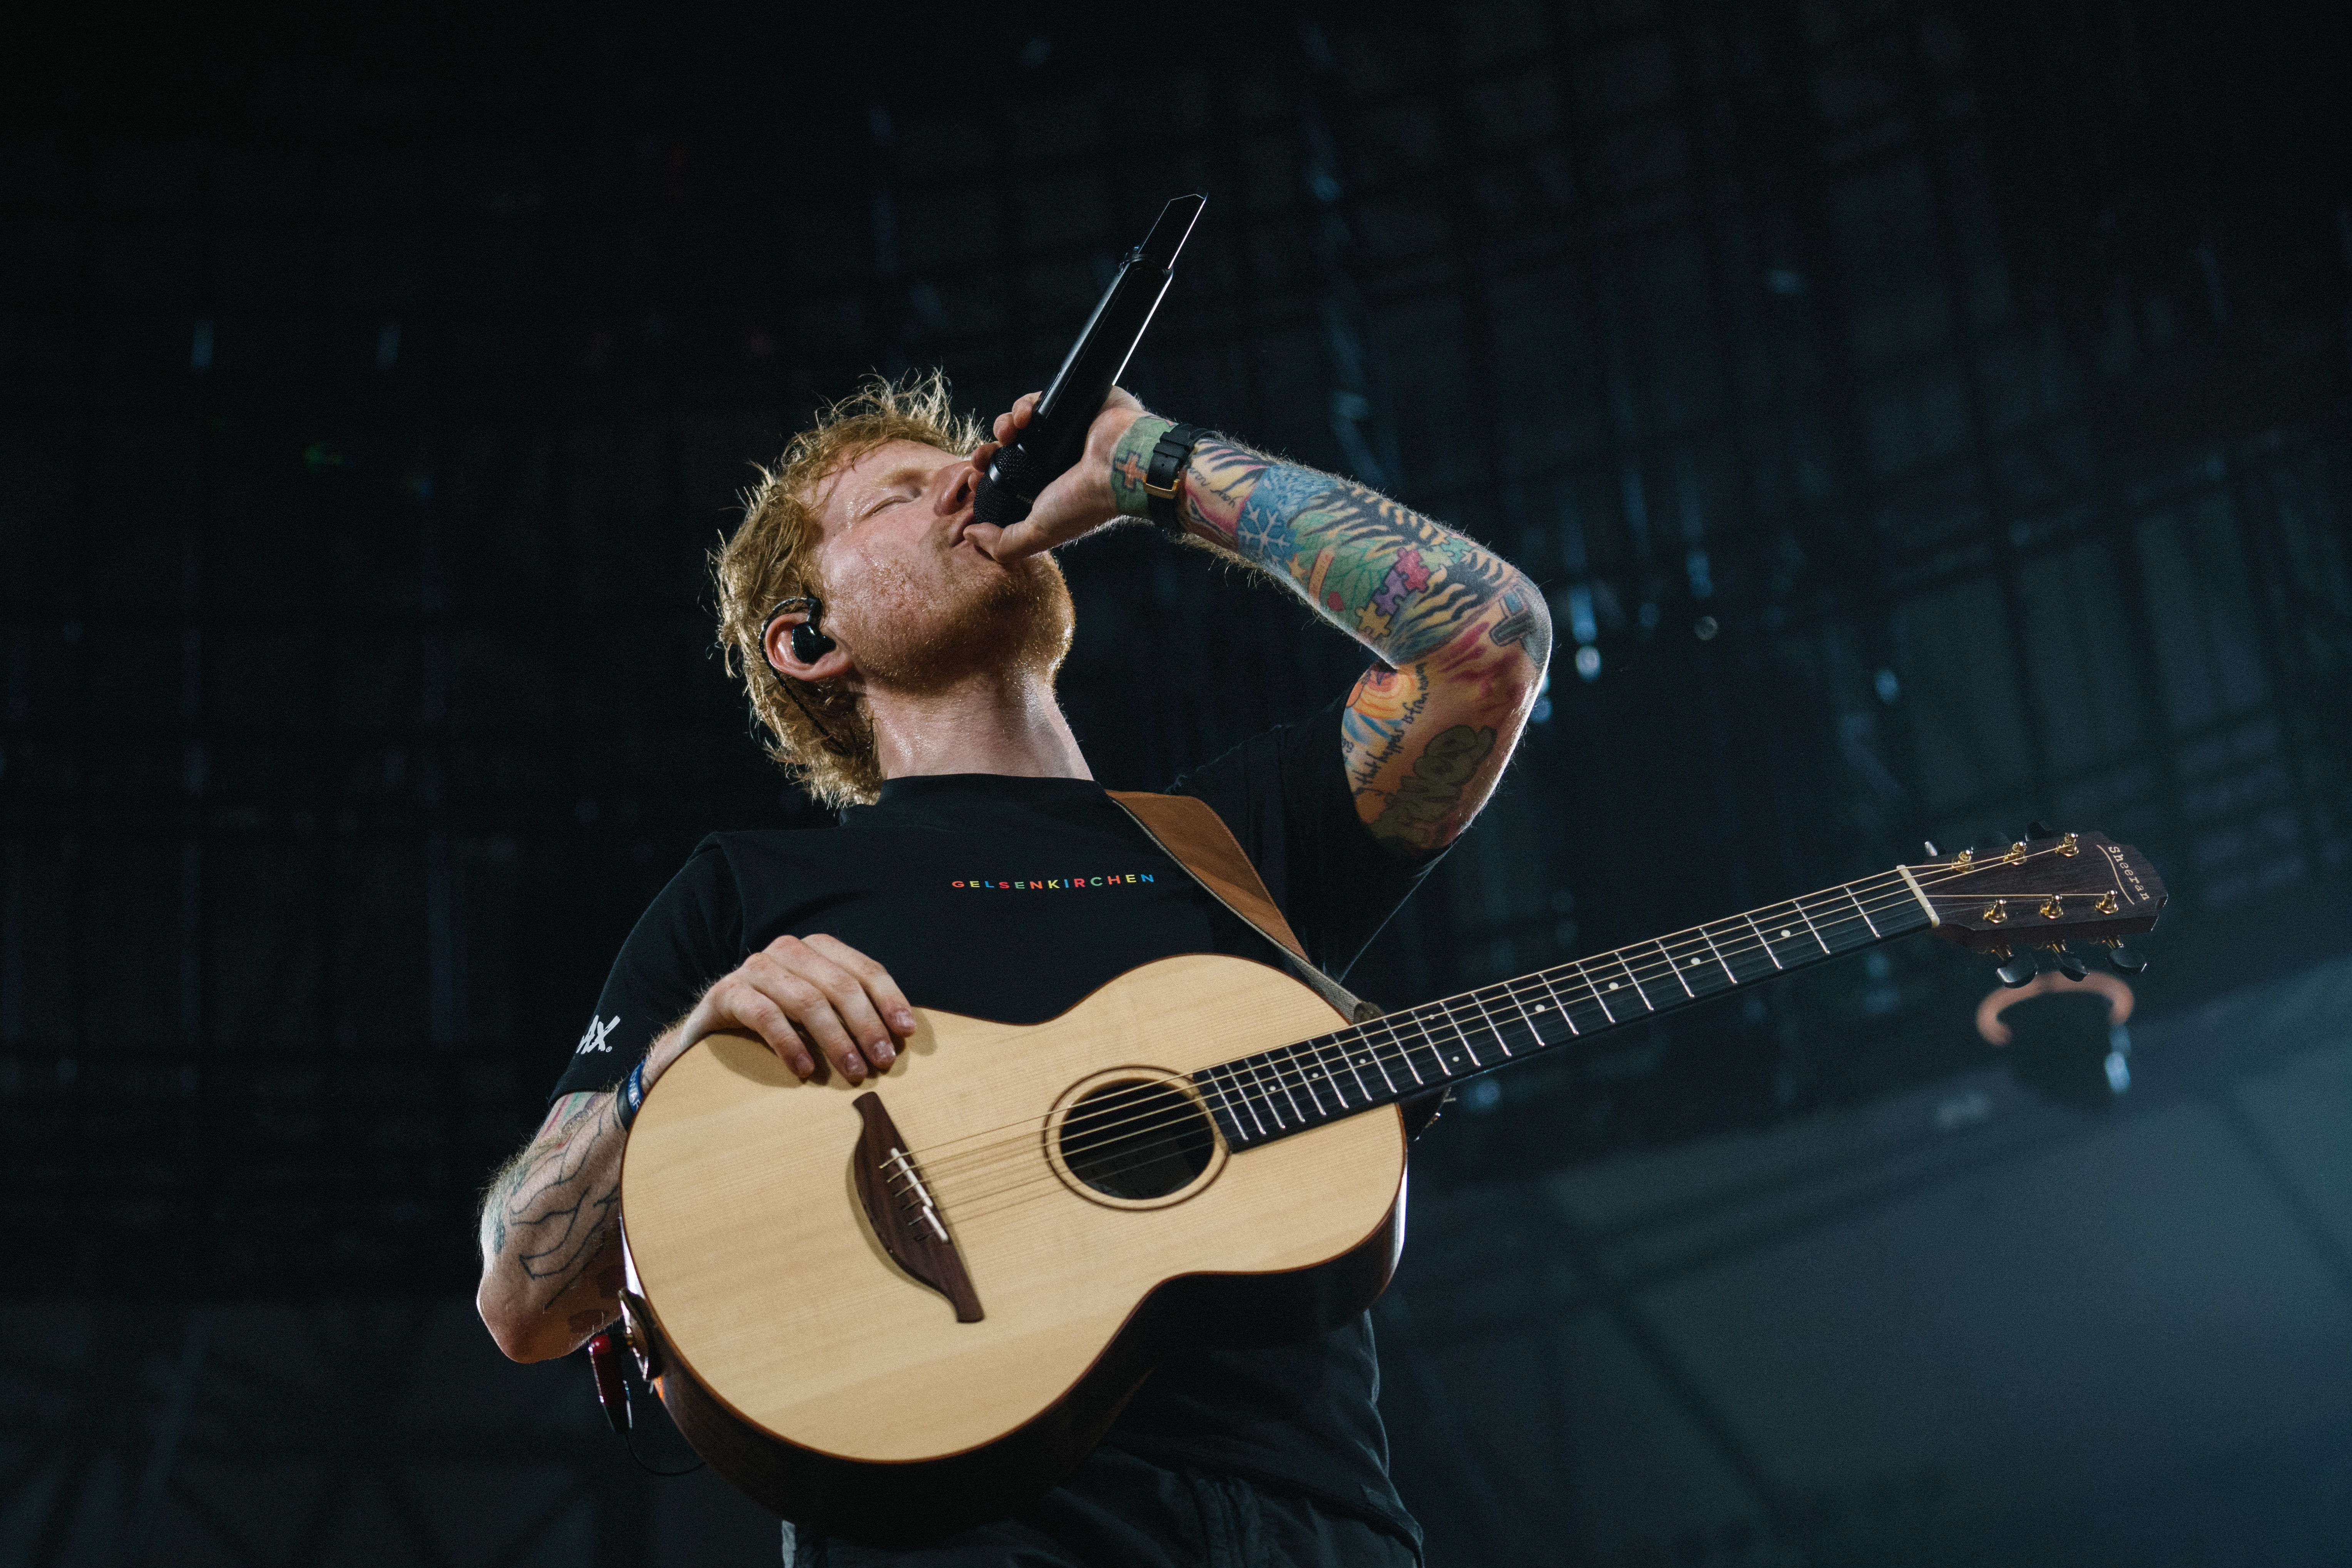 Ed Sheeran 在其 Mathematics 巡演中使用 Digital 6000 系列手持式话筒（搭配MM 435话筒头）进行演唱。图片来源：Zak Walters